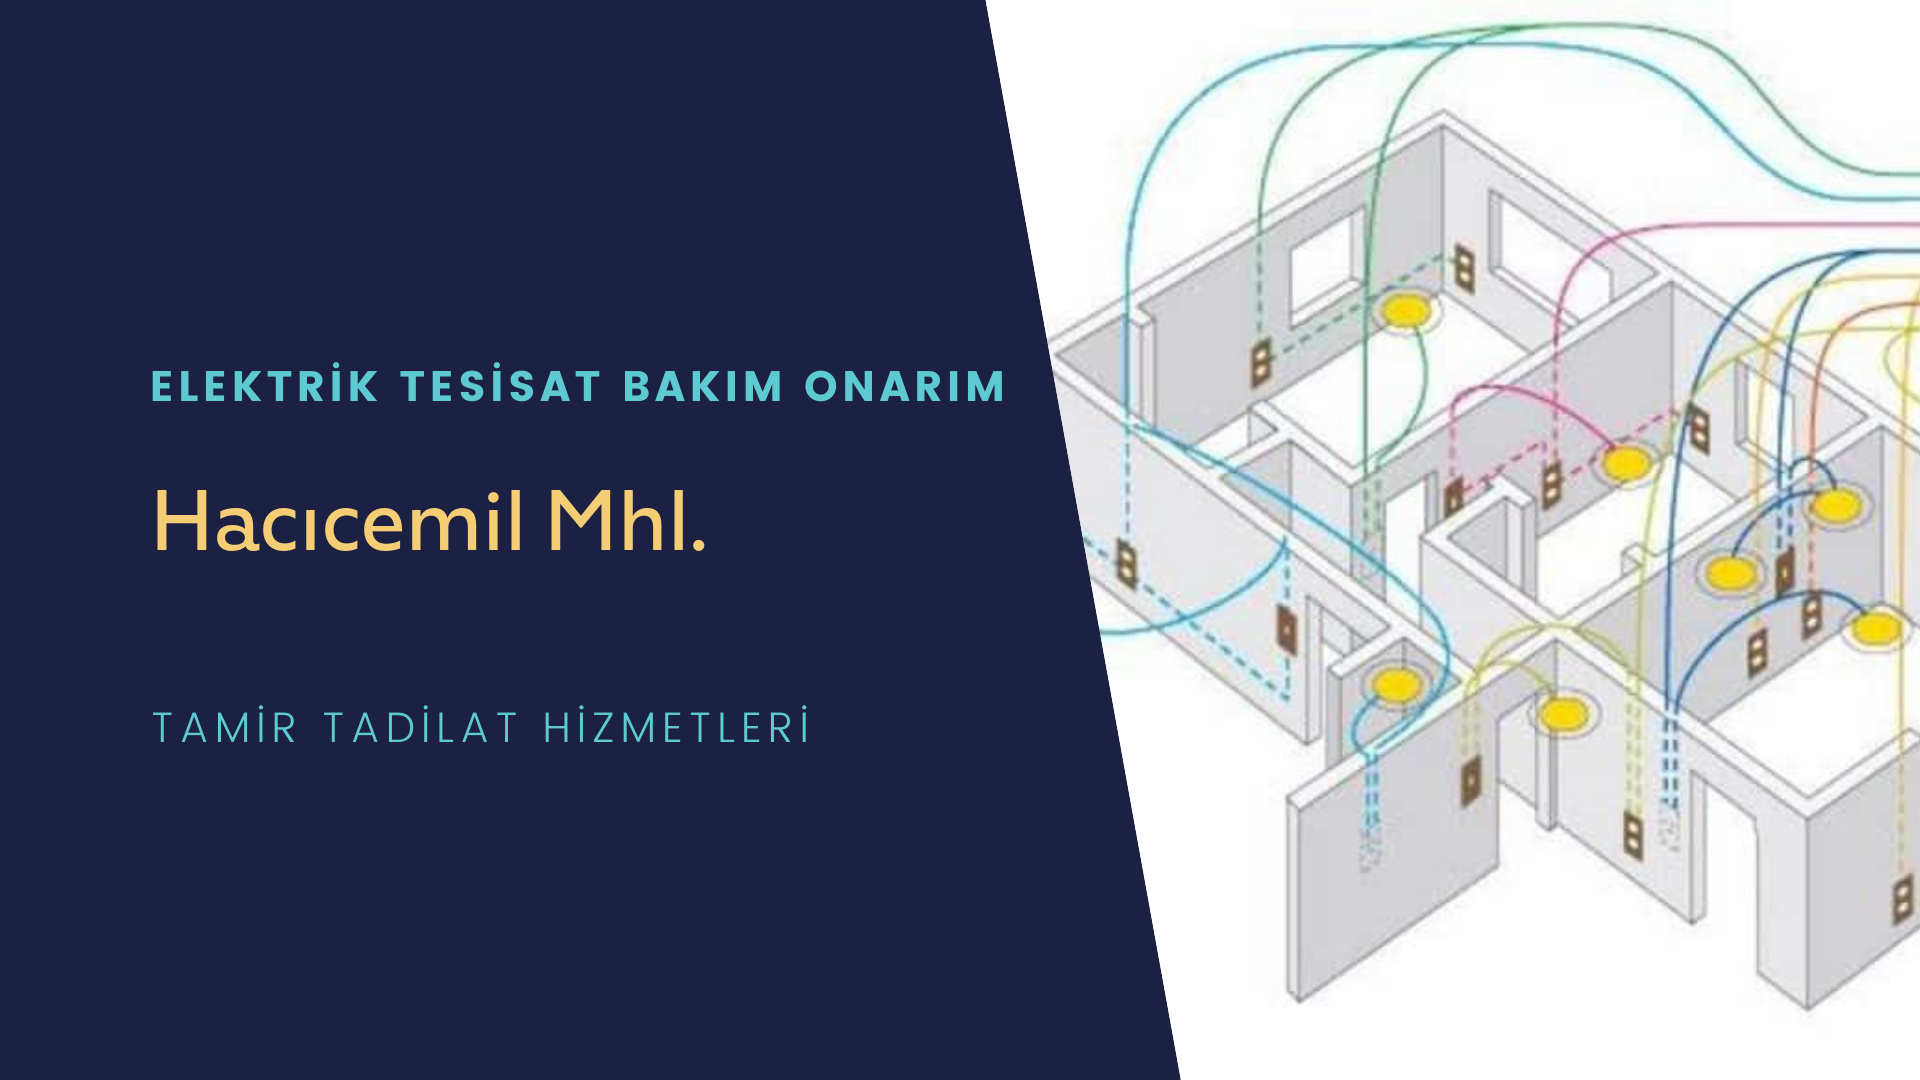 Hacıcemil Mhl.  elektrik tesisatı ustalarımı arıyorsunuz doğru adrestenizi Hacıcemil Mhl. elektrik tesisatı ustalarımız 7/24 sizlere hizmet vermekten mutluluk duyar.